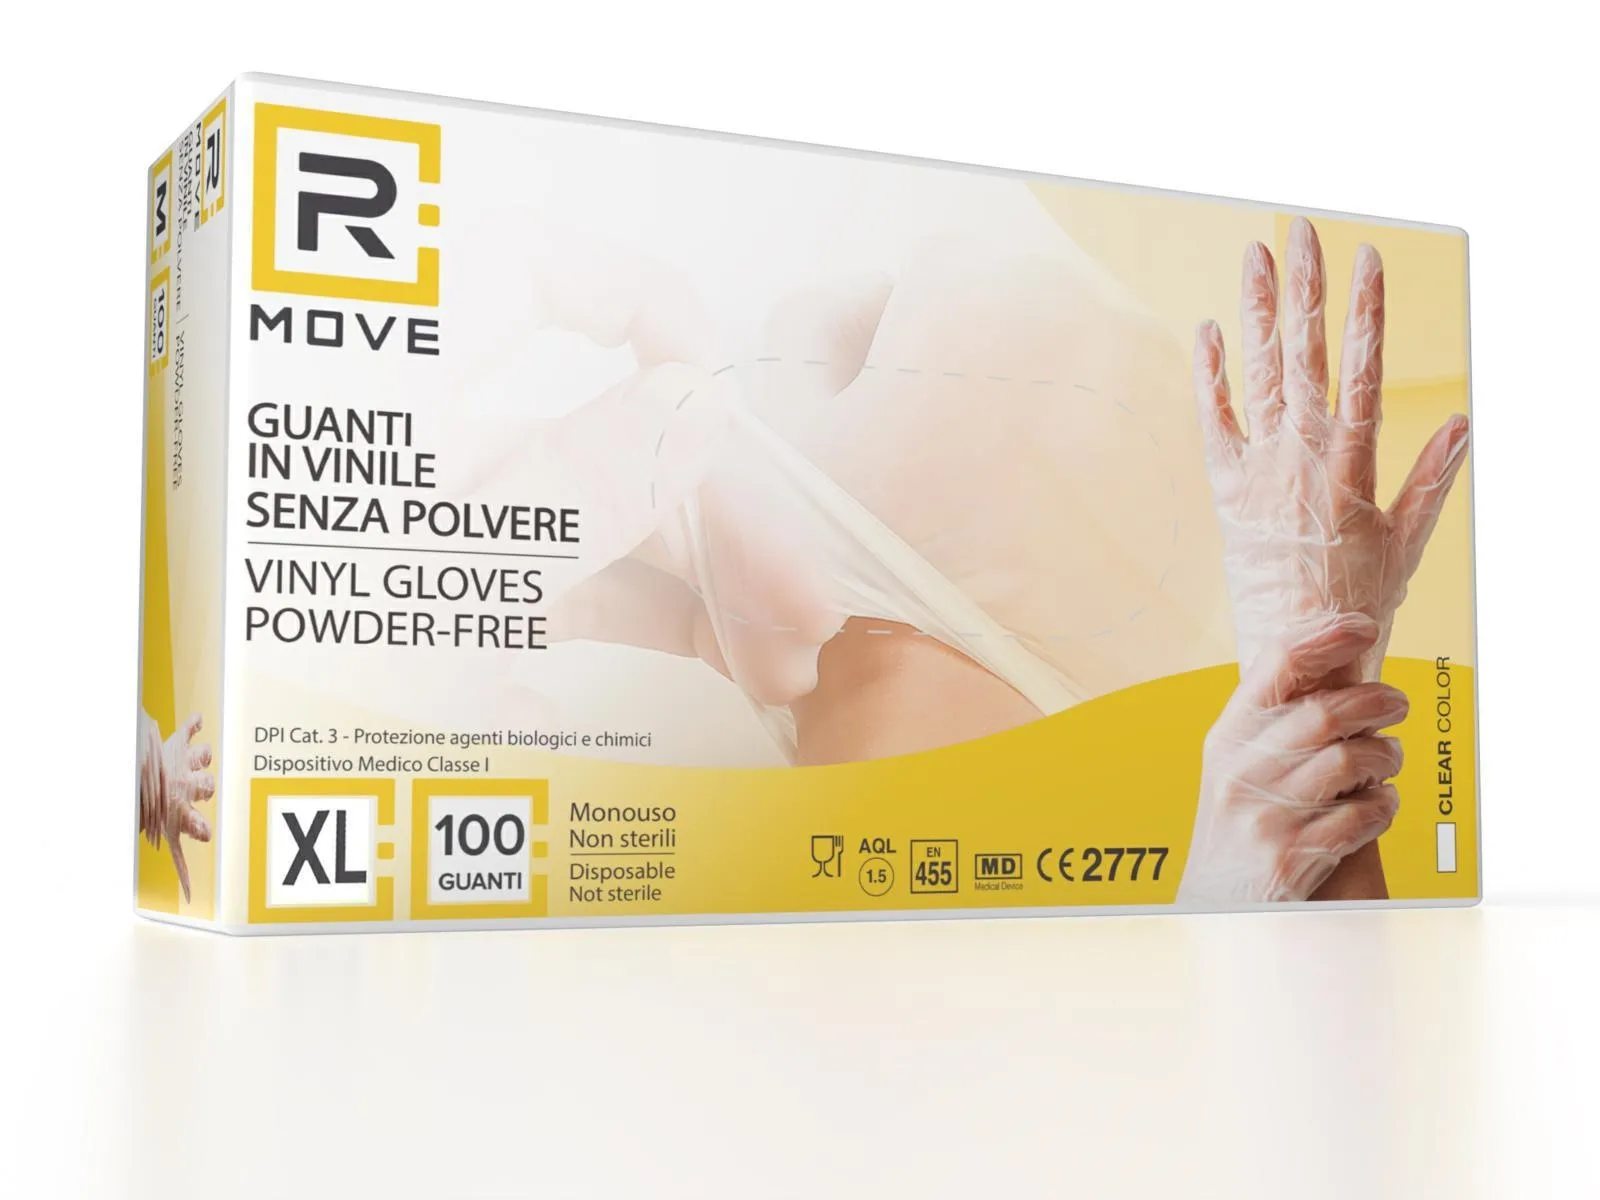 Box guanti rmove in vinile clear uso medico senza polvere tg.xl